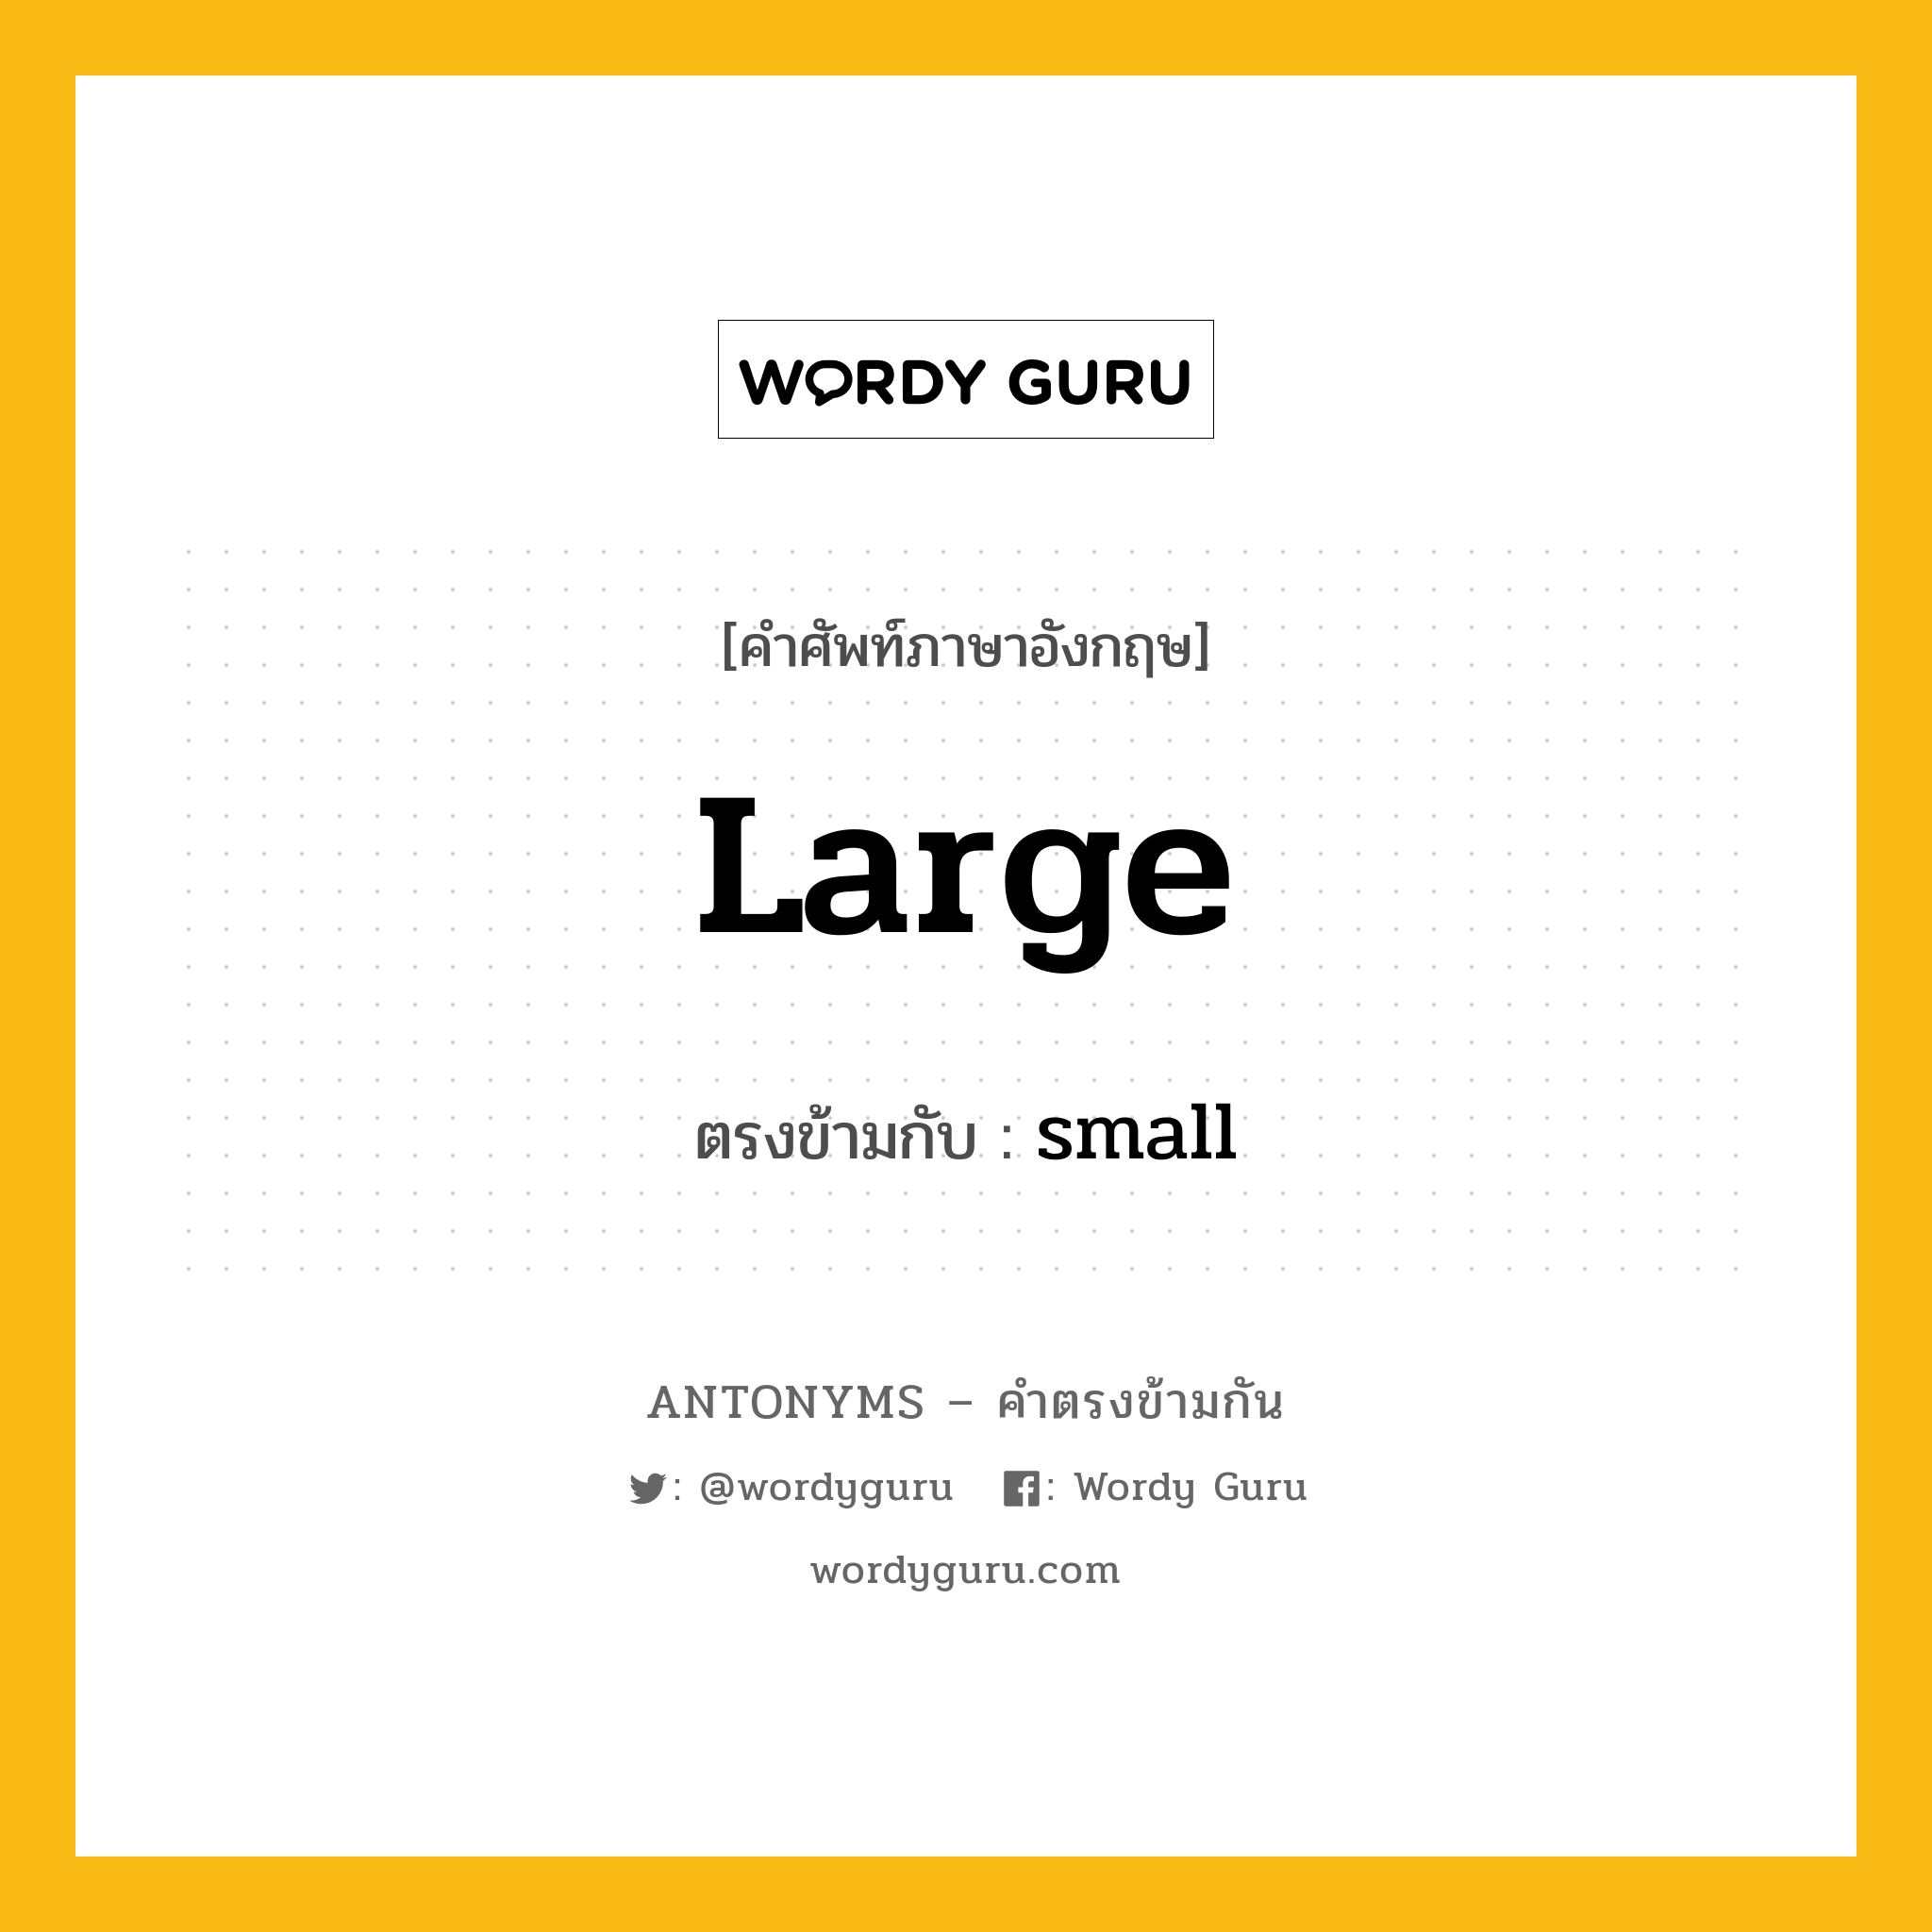 large เป็นคำตรงข้ามกับคำไหนบ้าง?, คำศัพท์ภาษาอังกฤษที่มีความหมายตรงข้ามกัน large ตรงข้ามกับ small หมวด small